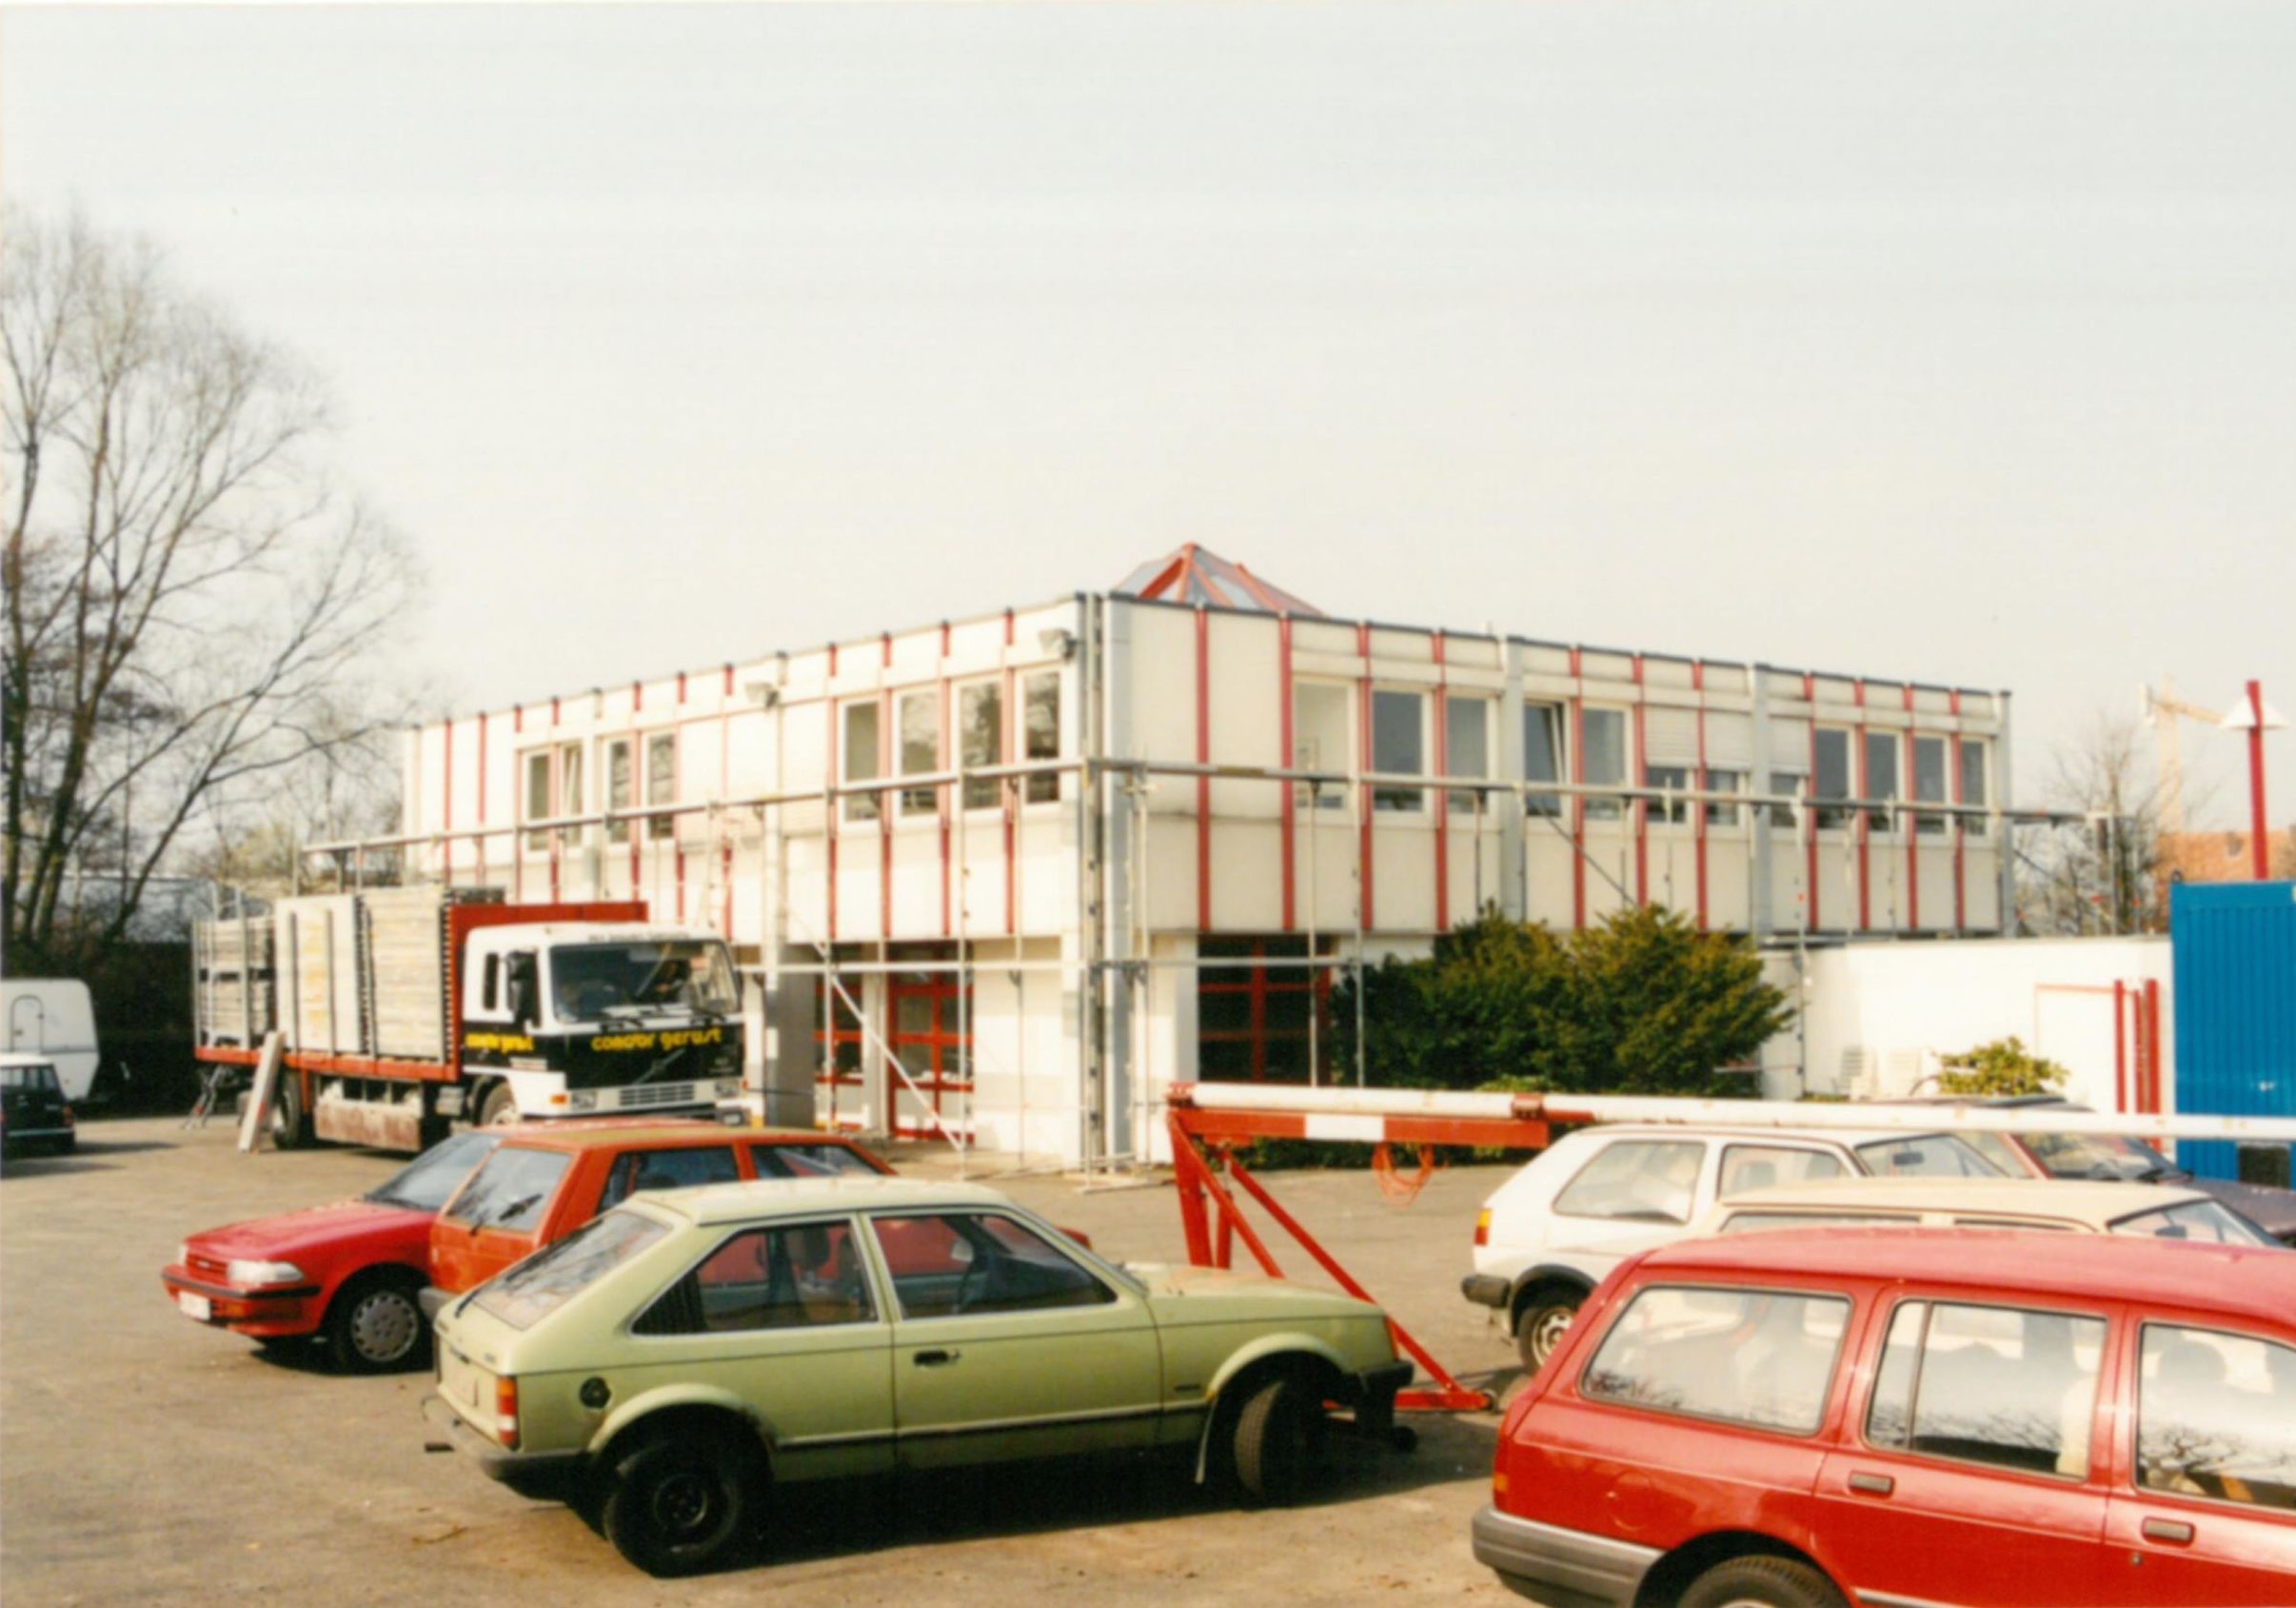 Ursprüngliche Gebäudeform vor dem Umbau 1997